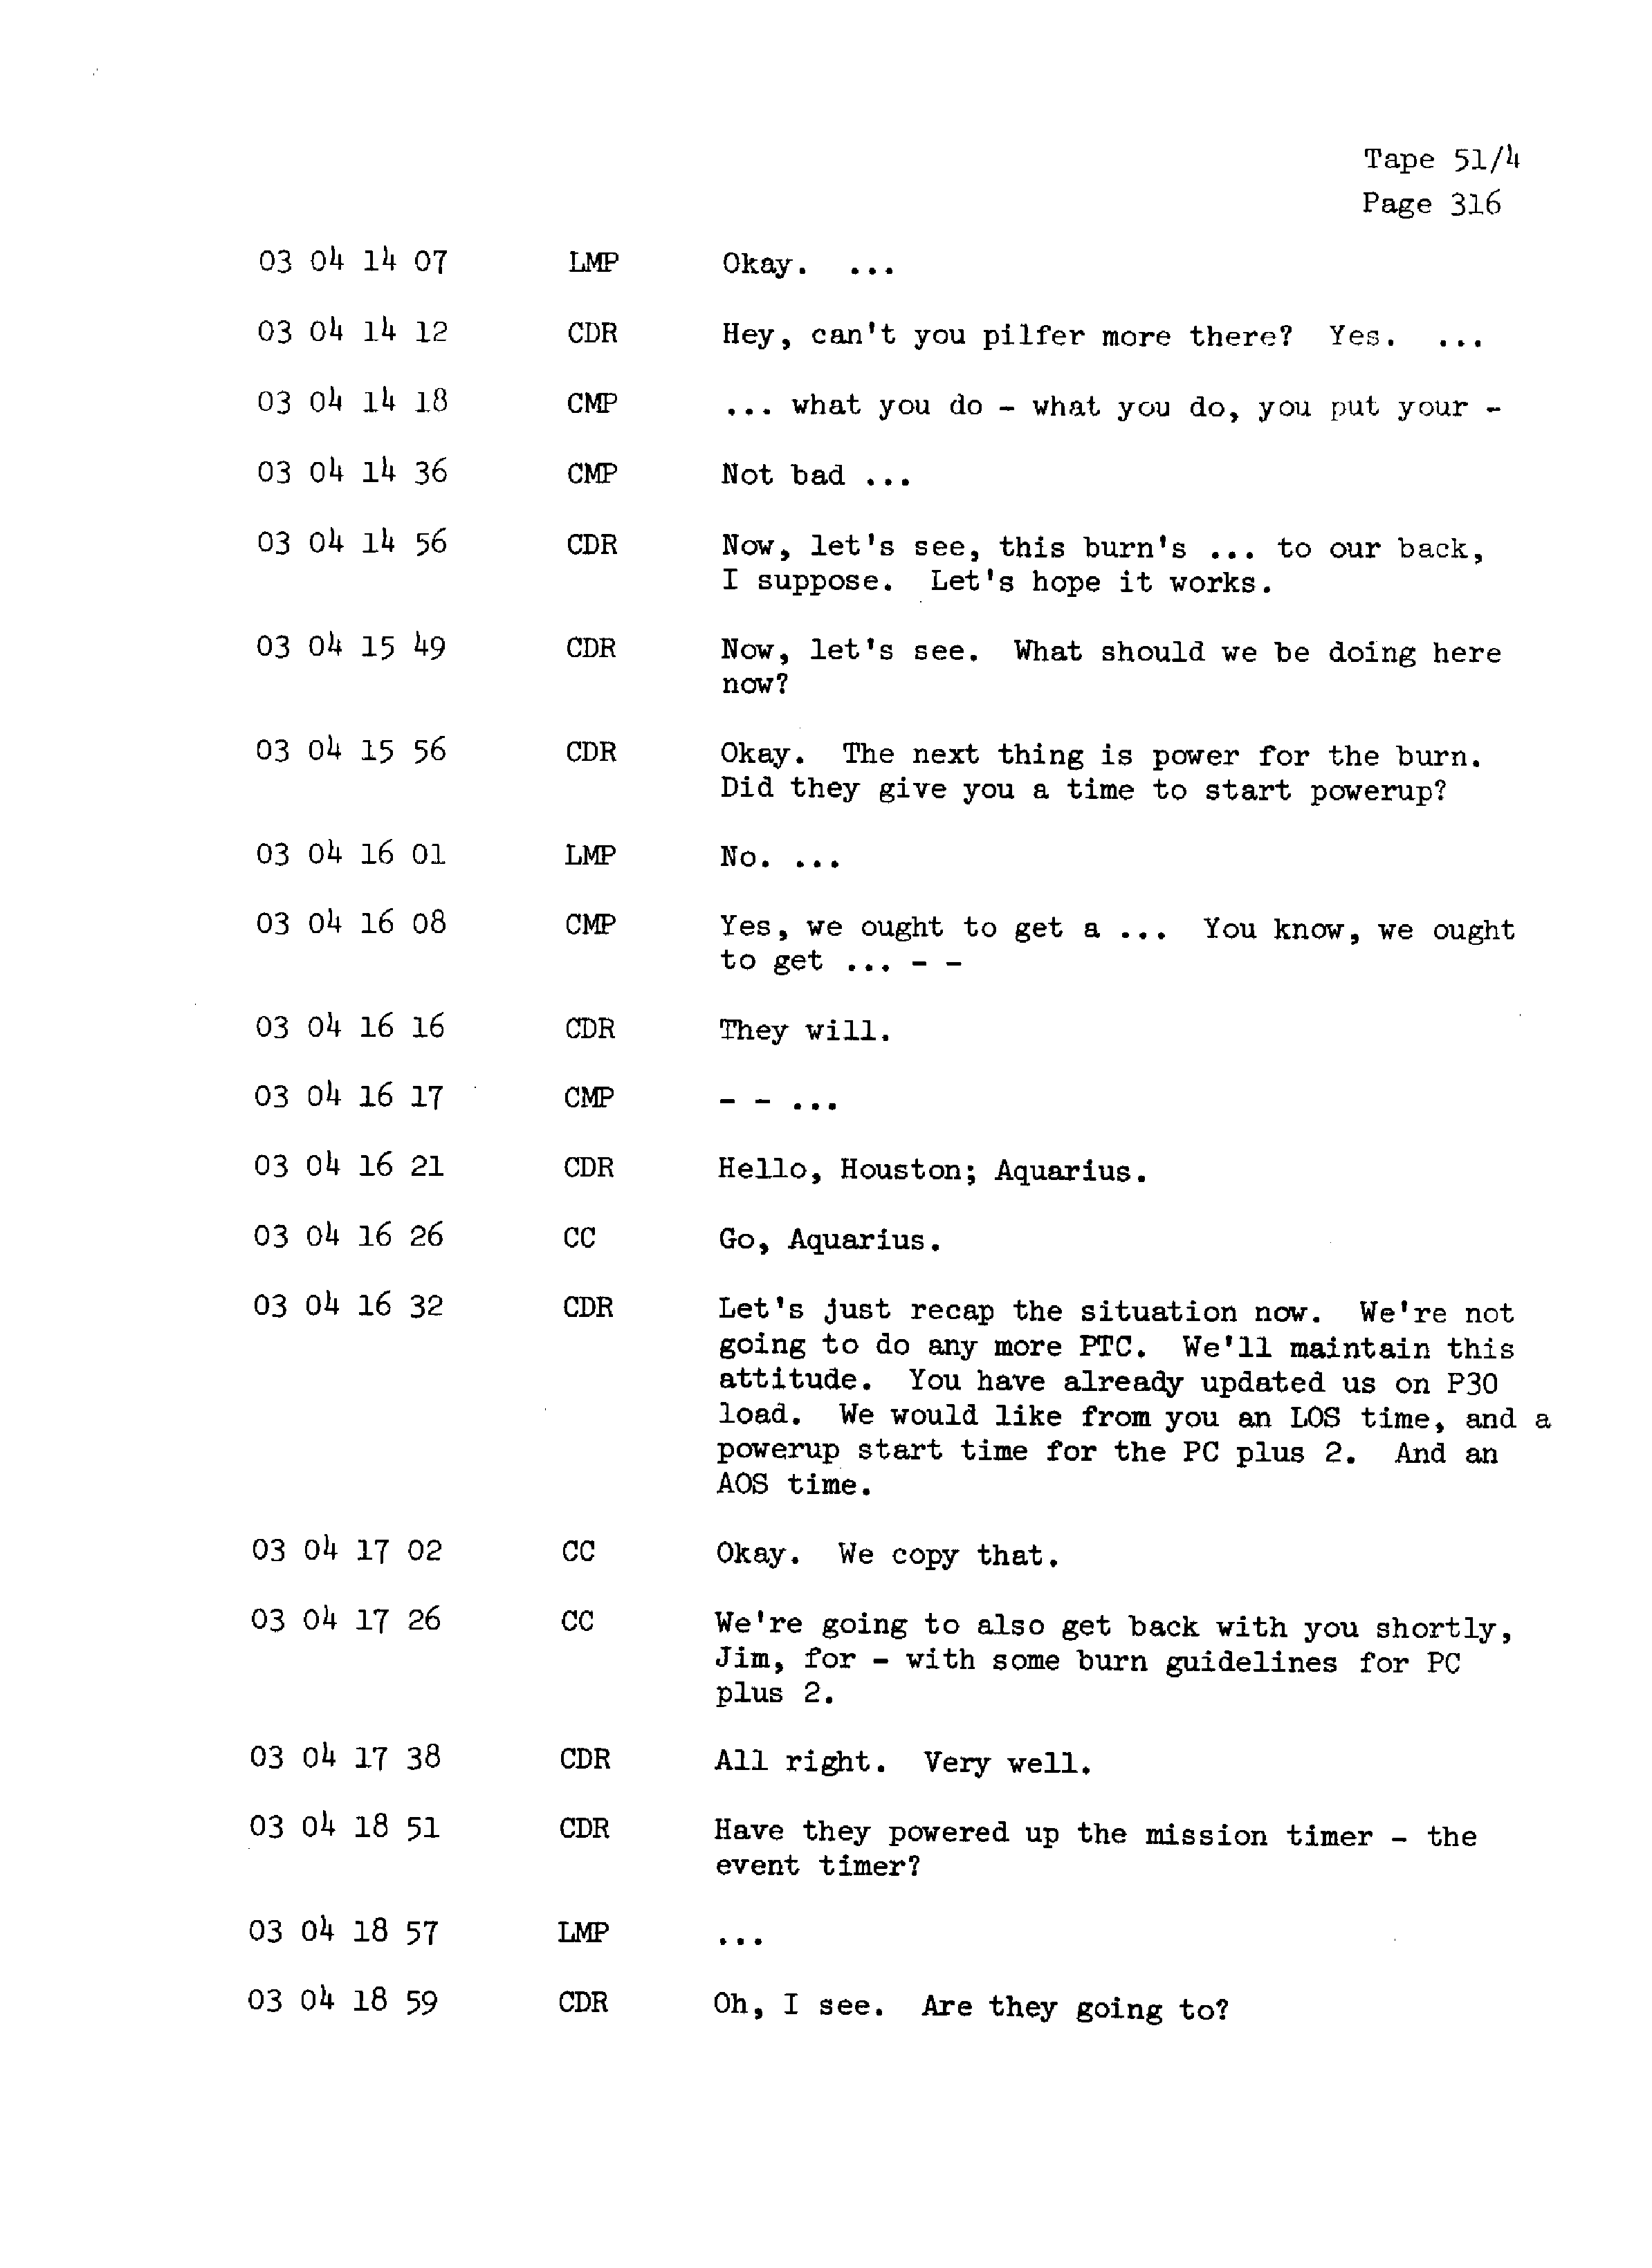 Page 323 of Apollo 13’s original transcript